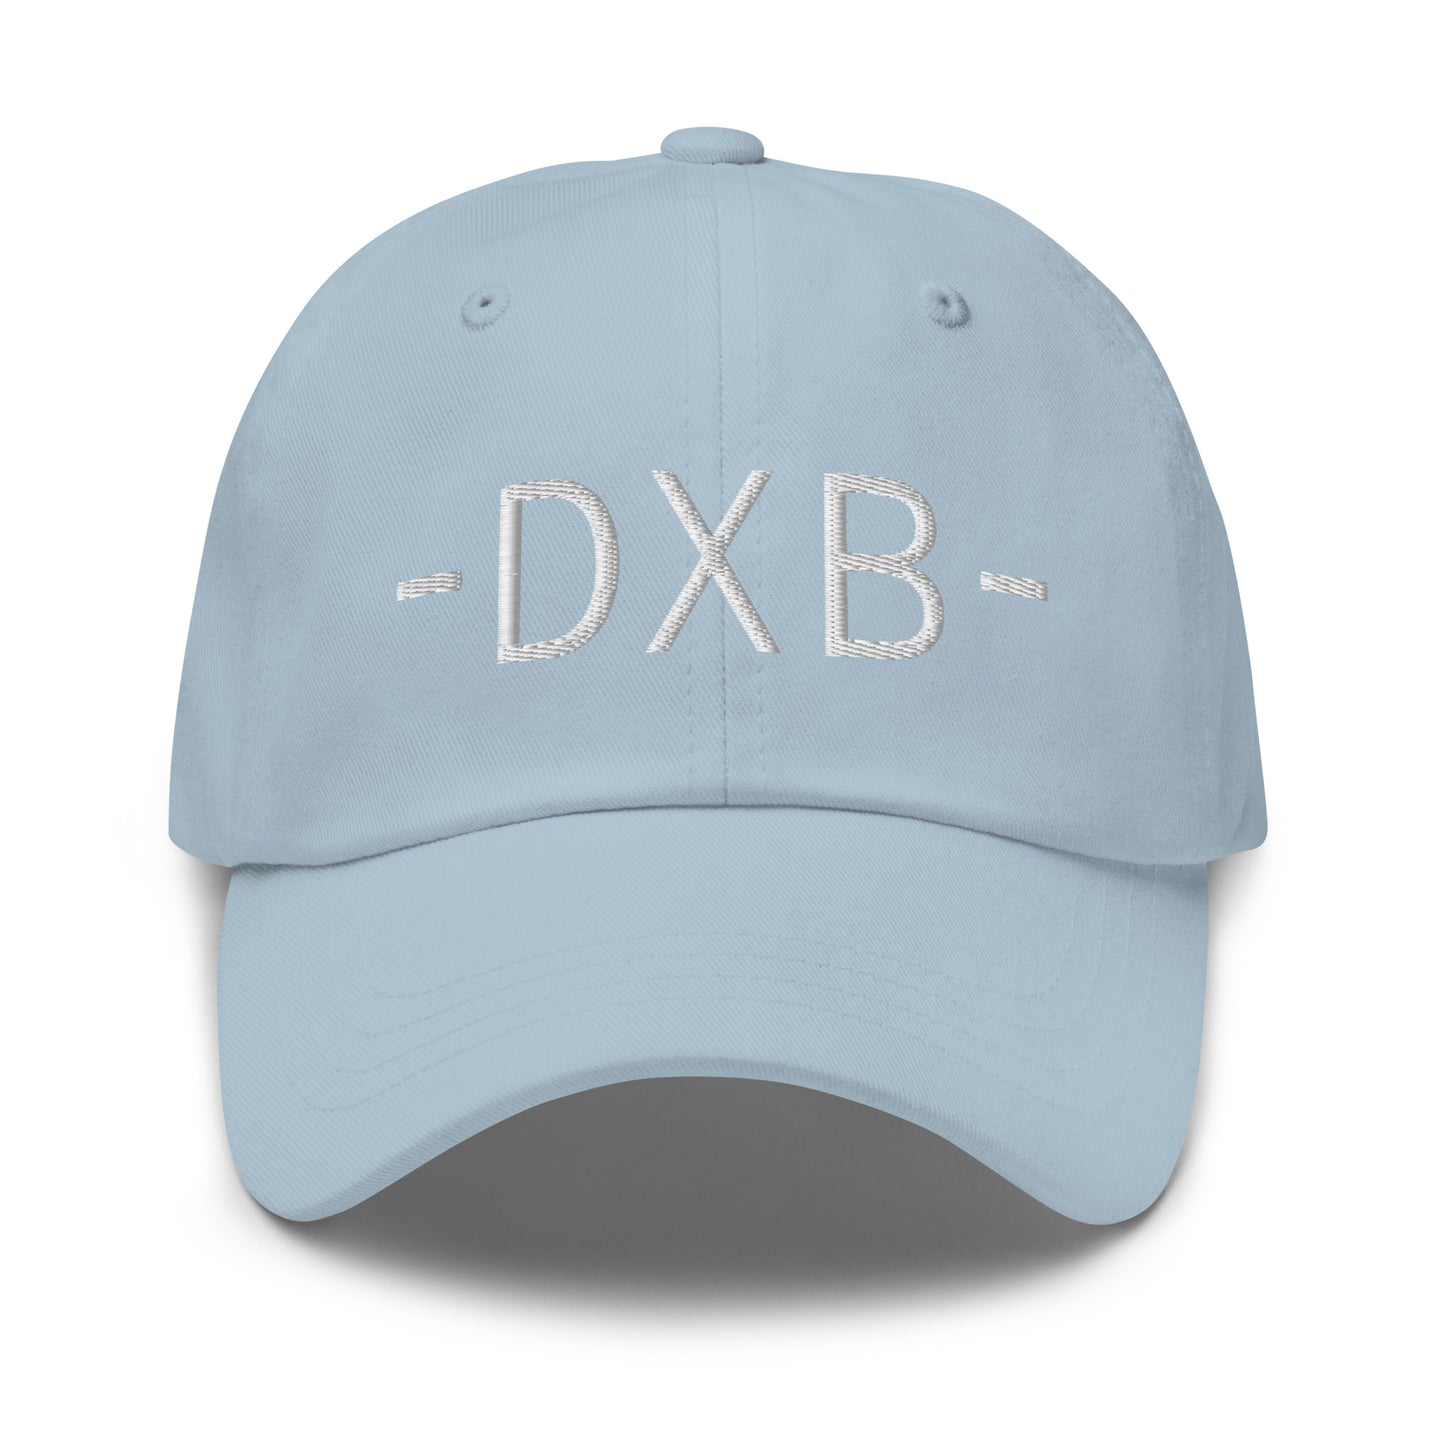 Souvenir Baseball Cap - White • DXB Dubai • YHM Designs - Image 27